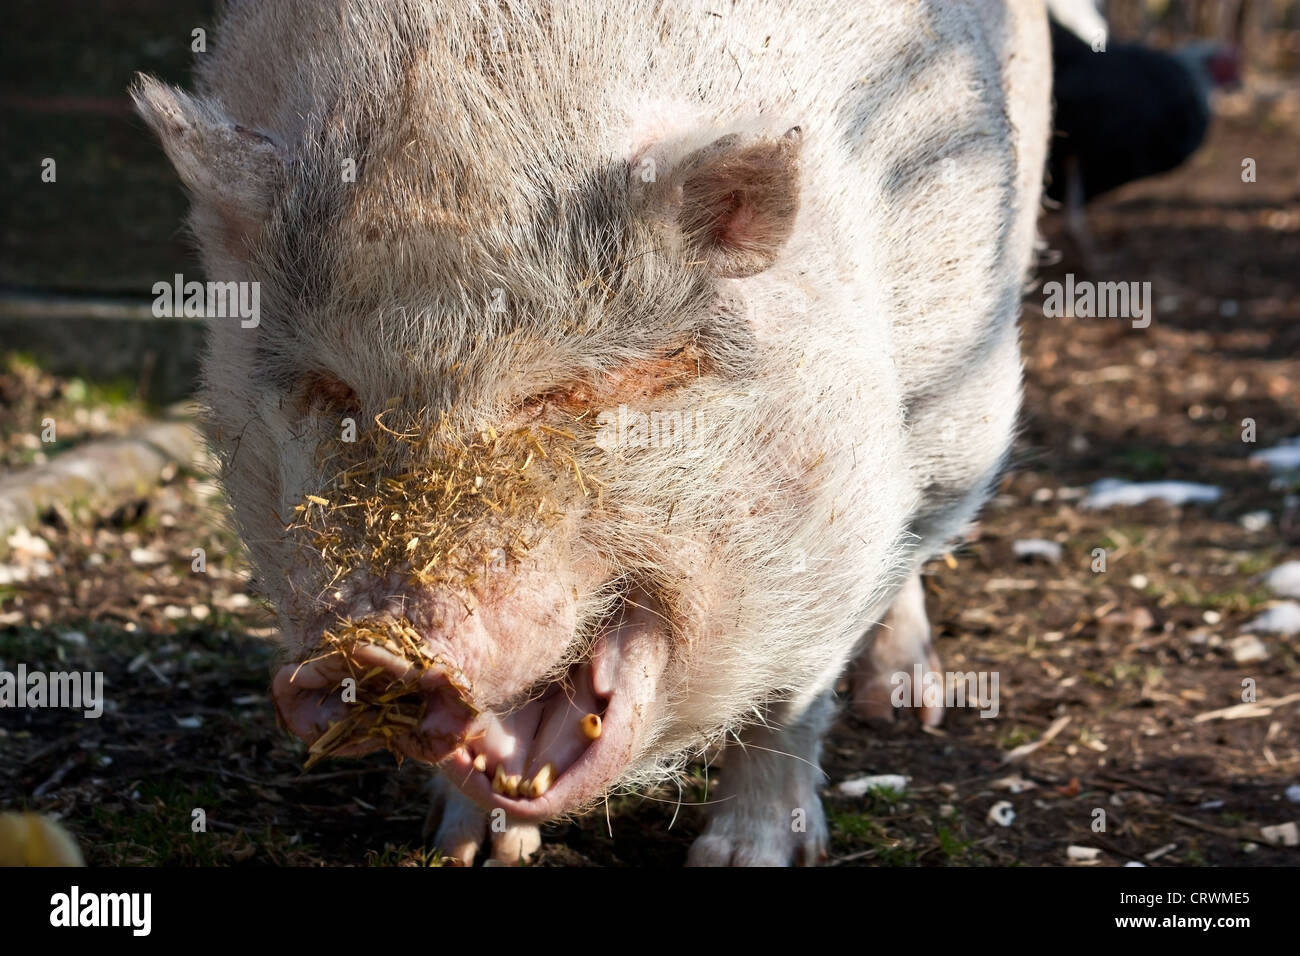 yawning pig Stock Photo